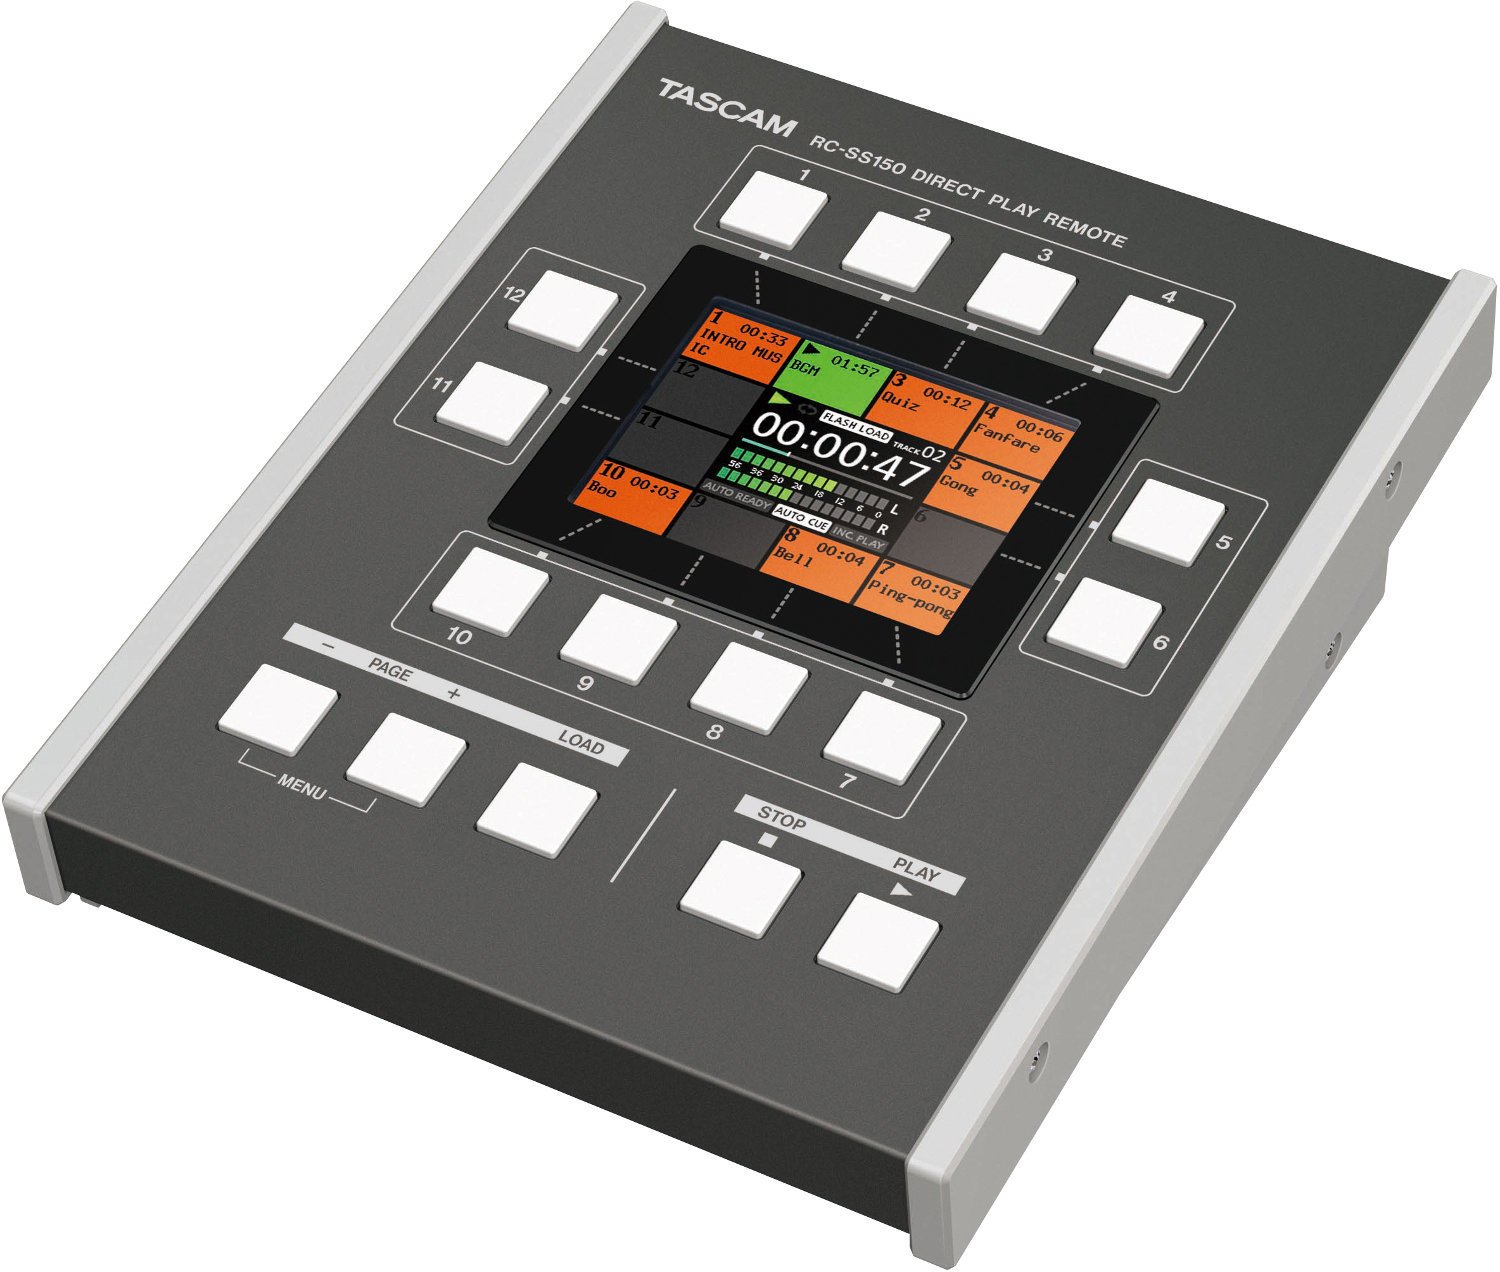 Controlo remoto para gravadores digitais Tascam RC-SS150 Controle remoto